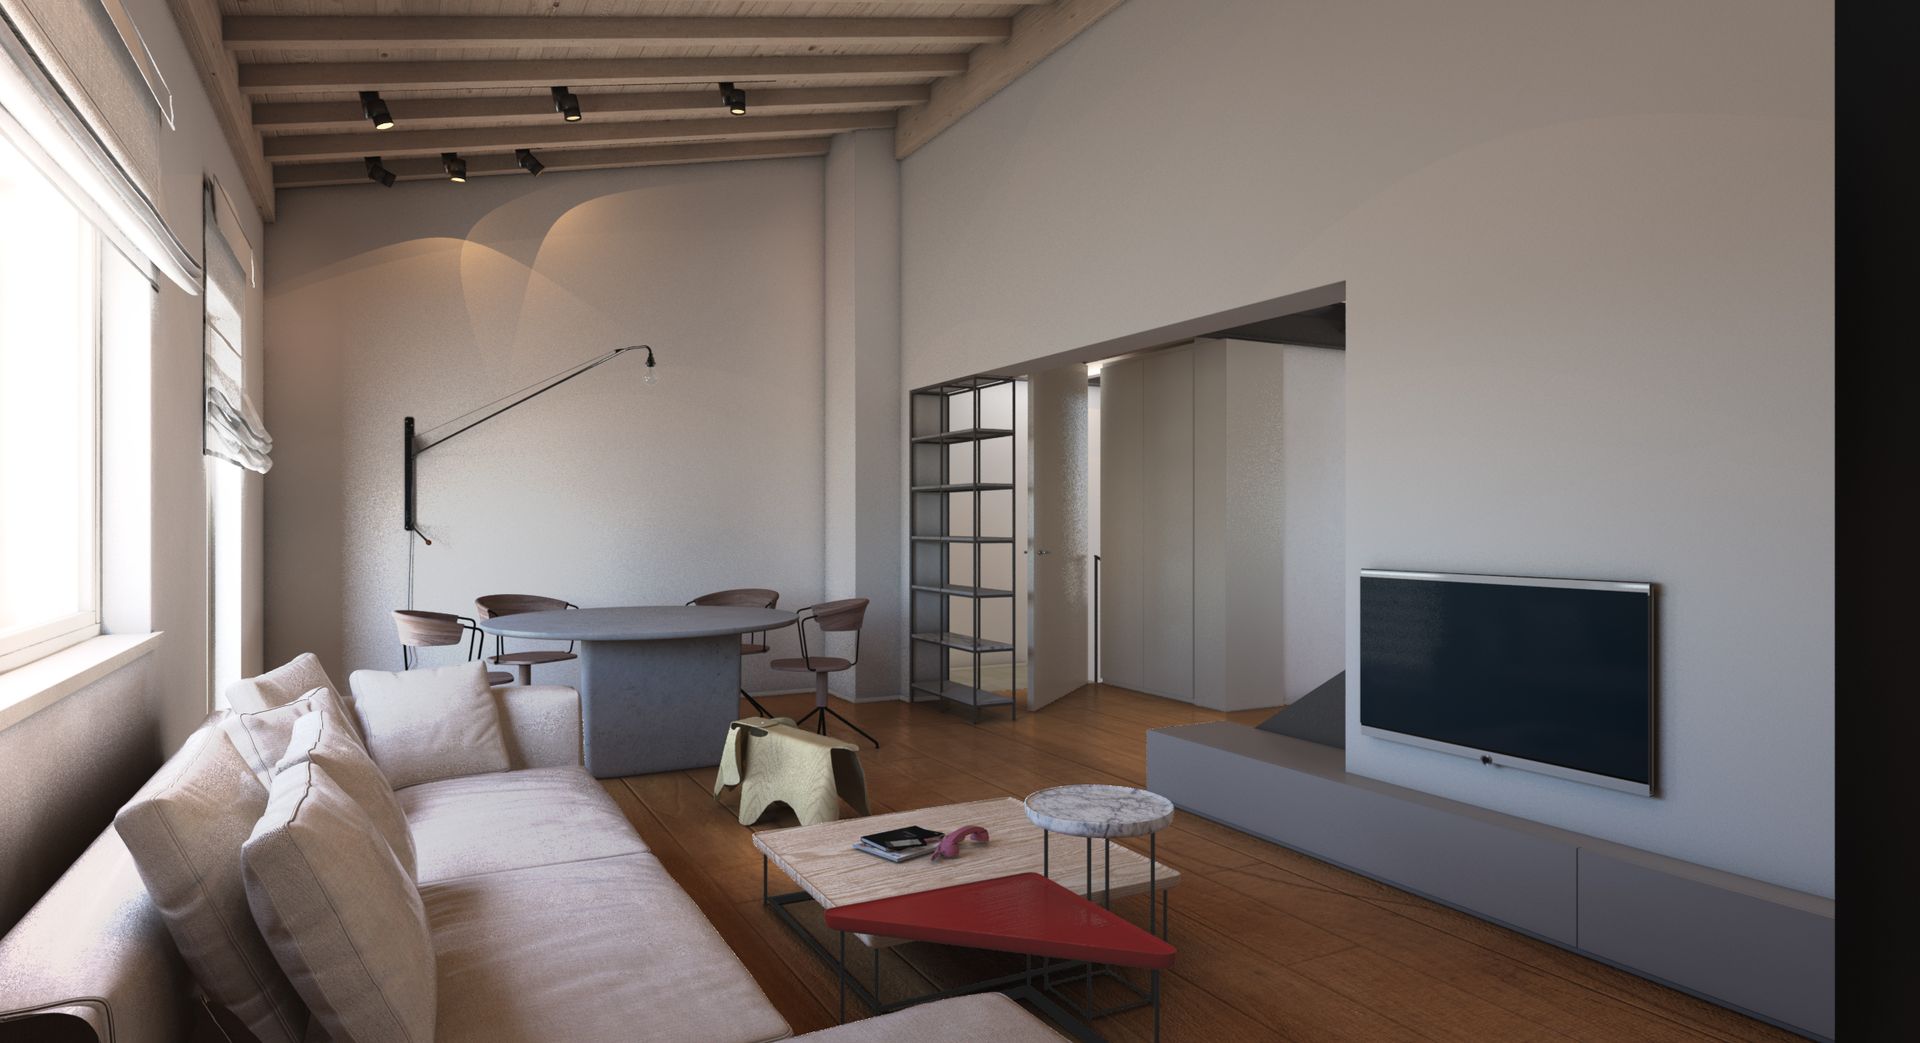 Progetto interior design, casa unifamiliare provincia di Bergamo, lago di Iseo, lago di Como, lago di Garda. Officina Magisafi architettura design - living